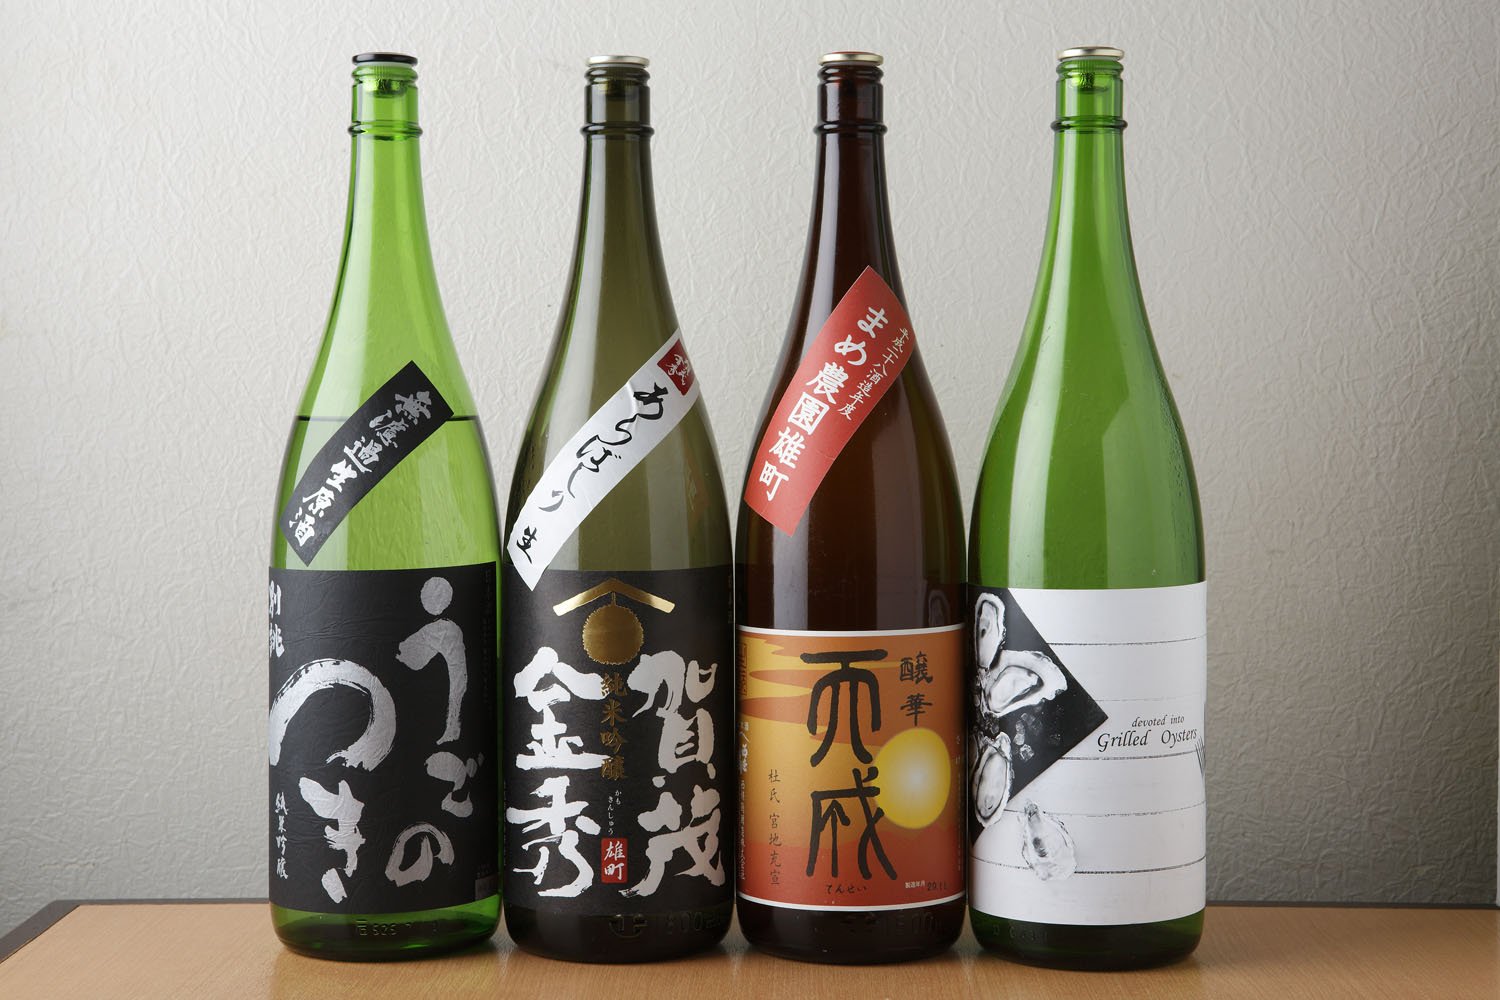 日本酒は「雨後の月」や「賀茂金秀」など広島の地酒のみが23銘柄そろう。「広島の日本酒を東京からもっと広めたい」。